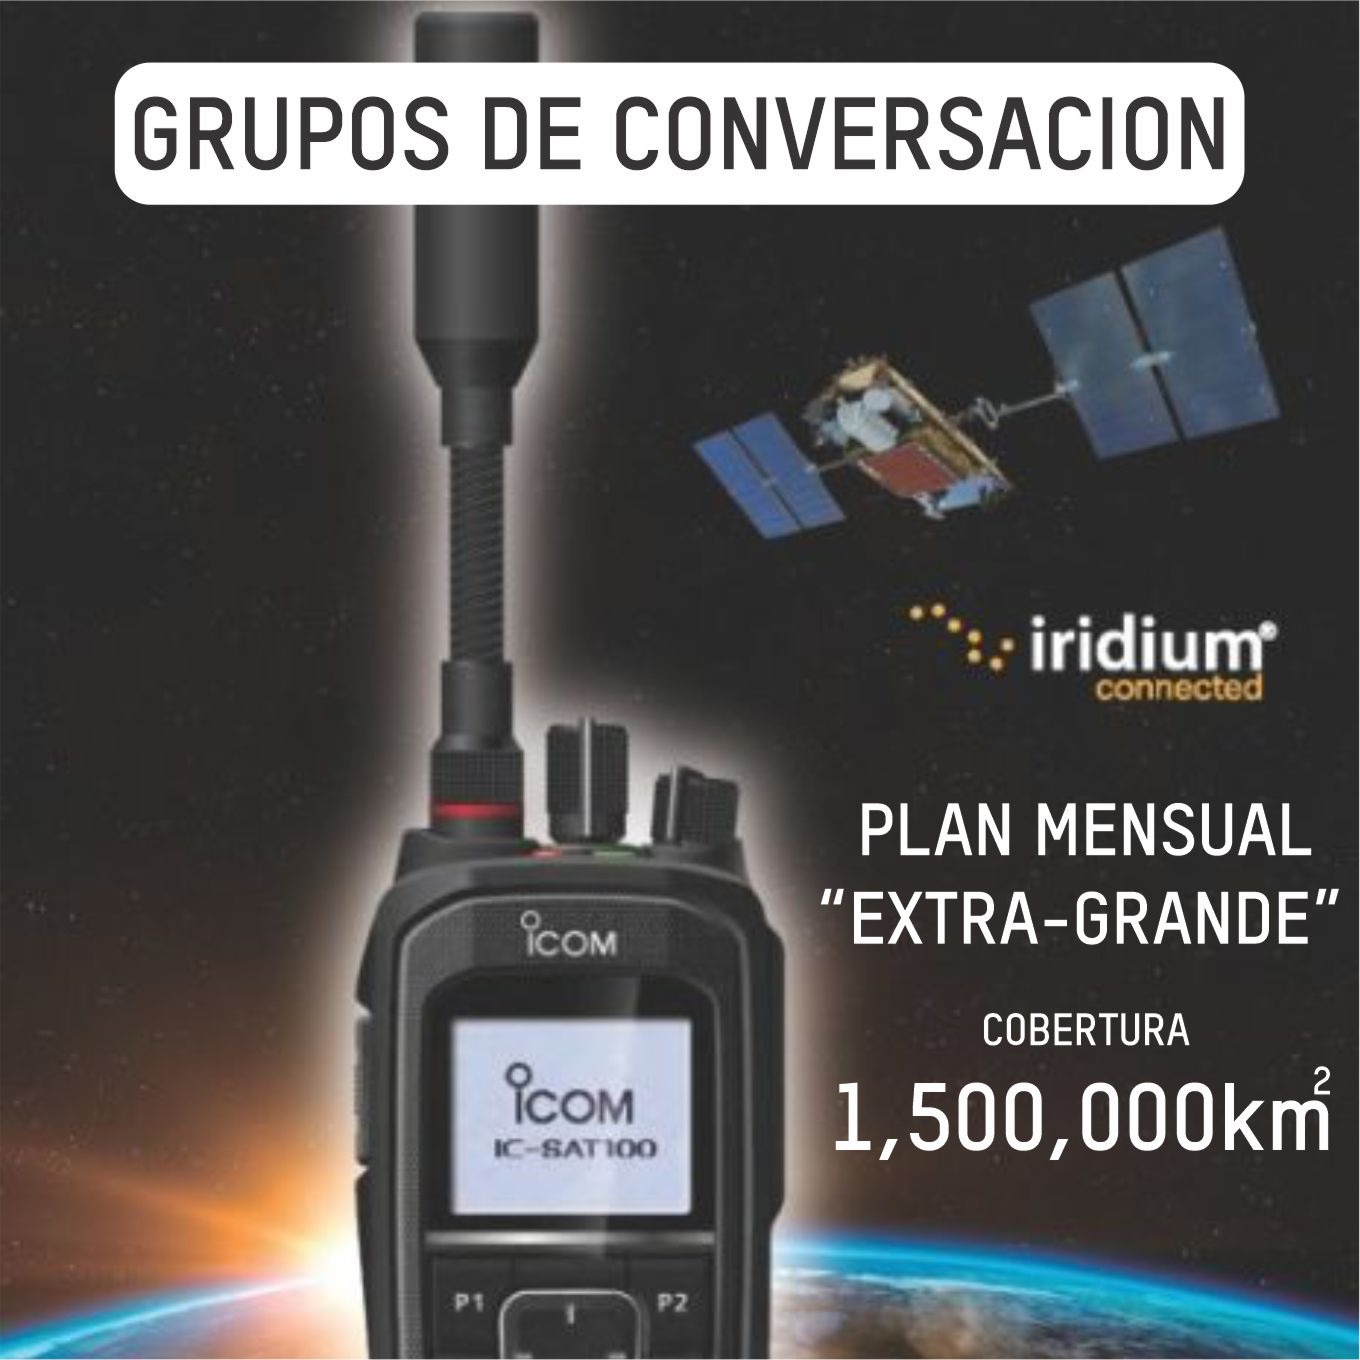 Plan Mensual Extra Grande de Conversación por Grupo Iridium PTT Radiocomunicación Satelital (hasta 1,500,000 km cuadrados)